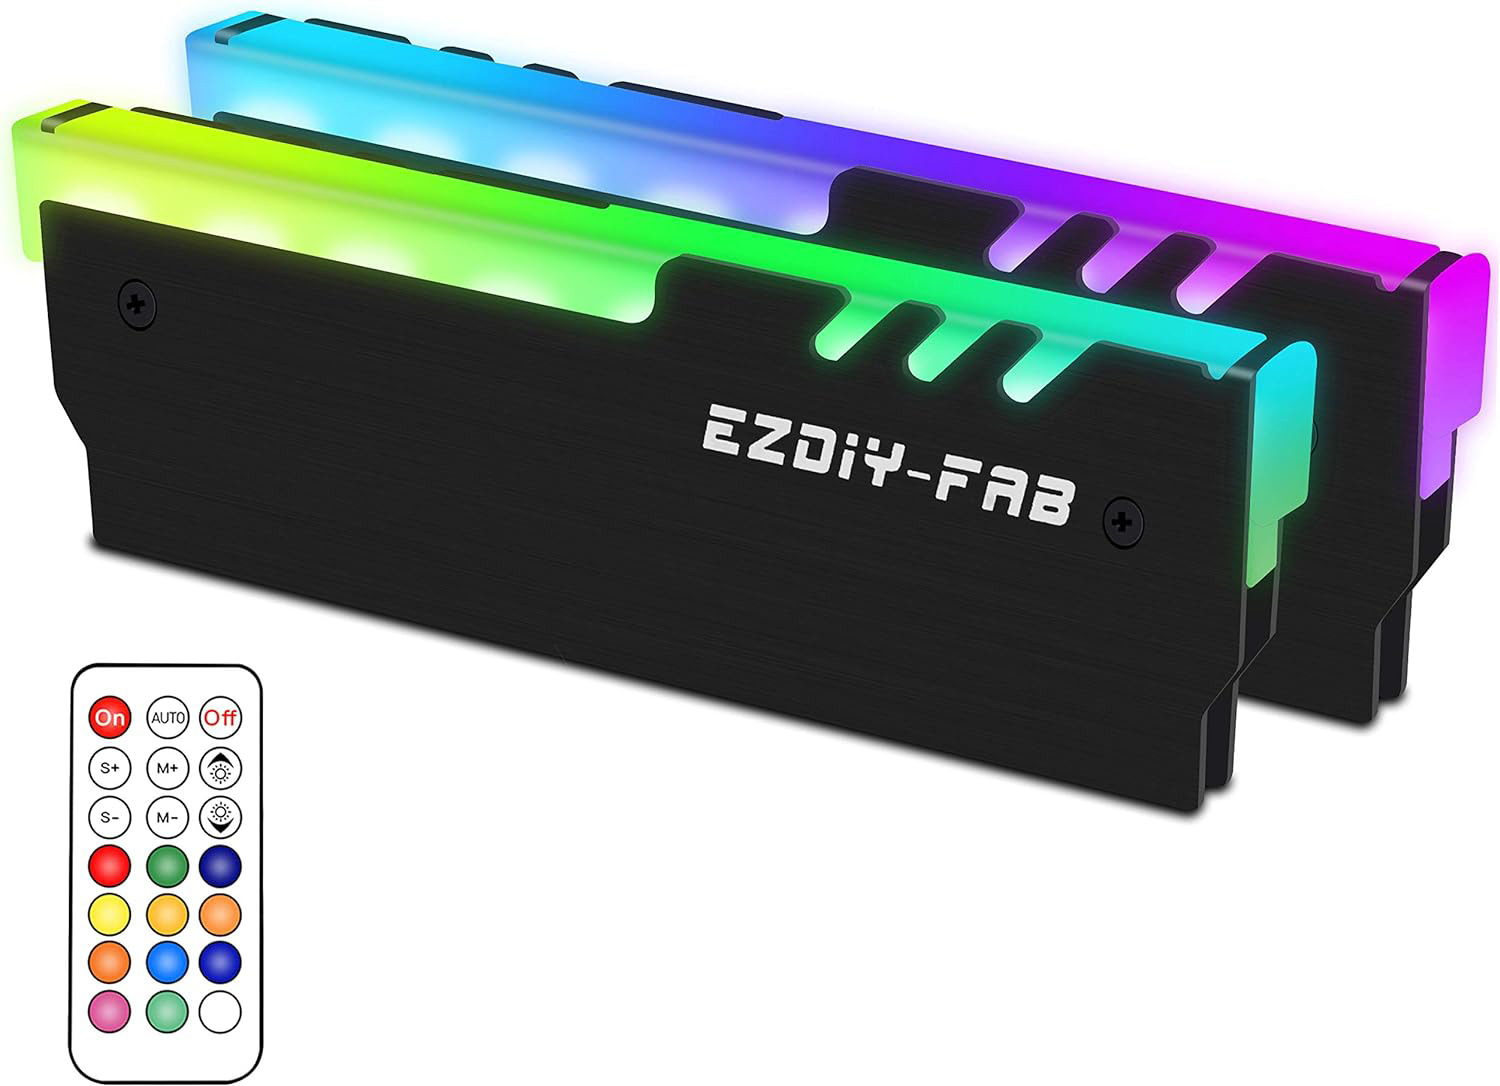 EZDIY-FAB ARGB Memory RAM Cooler DDR Heatsink with Controller for DIY PC Game MO